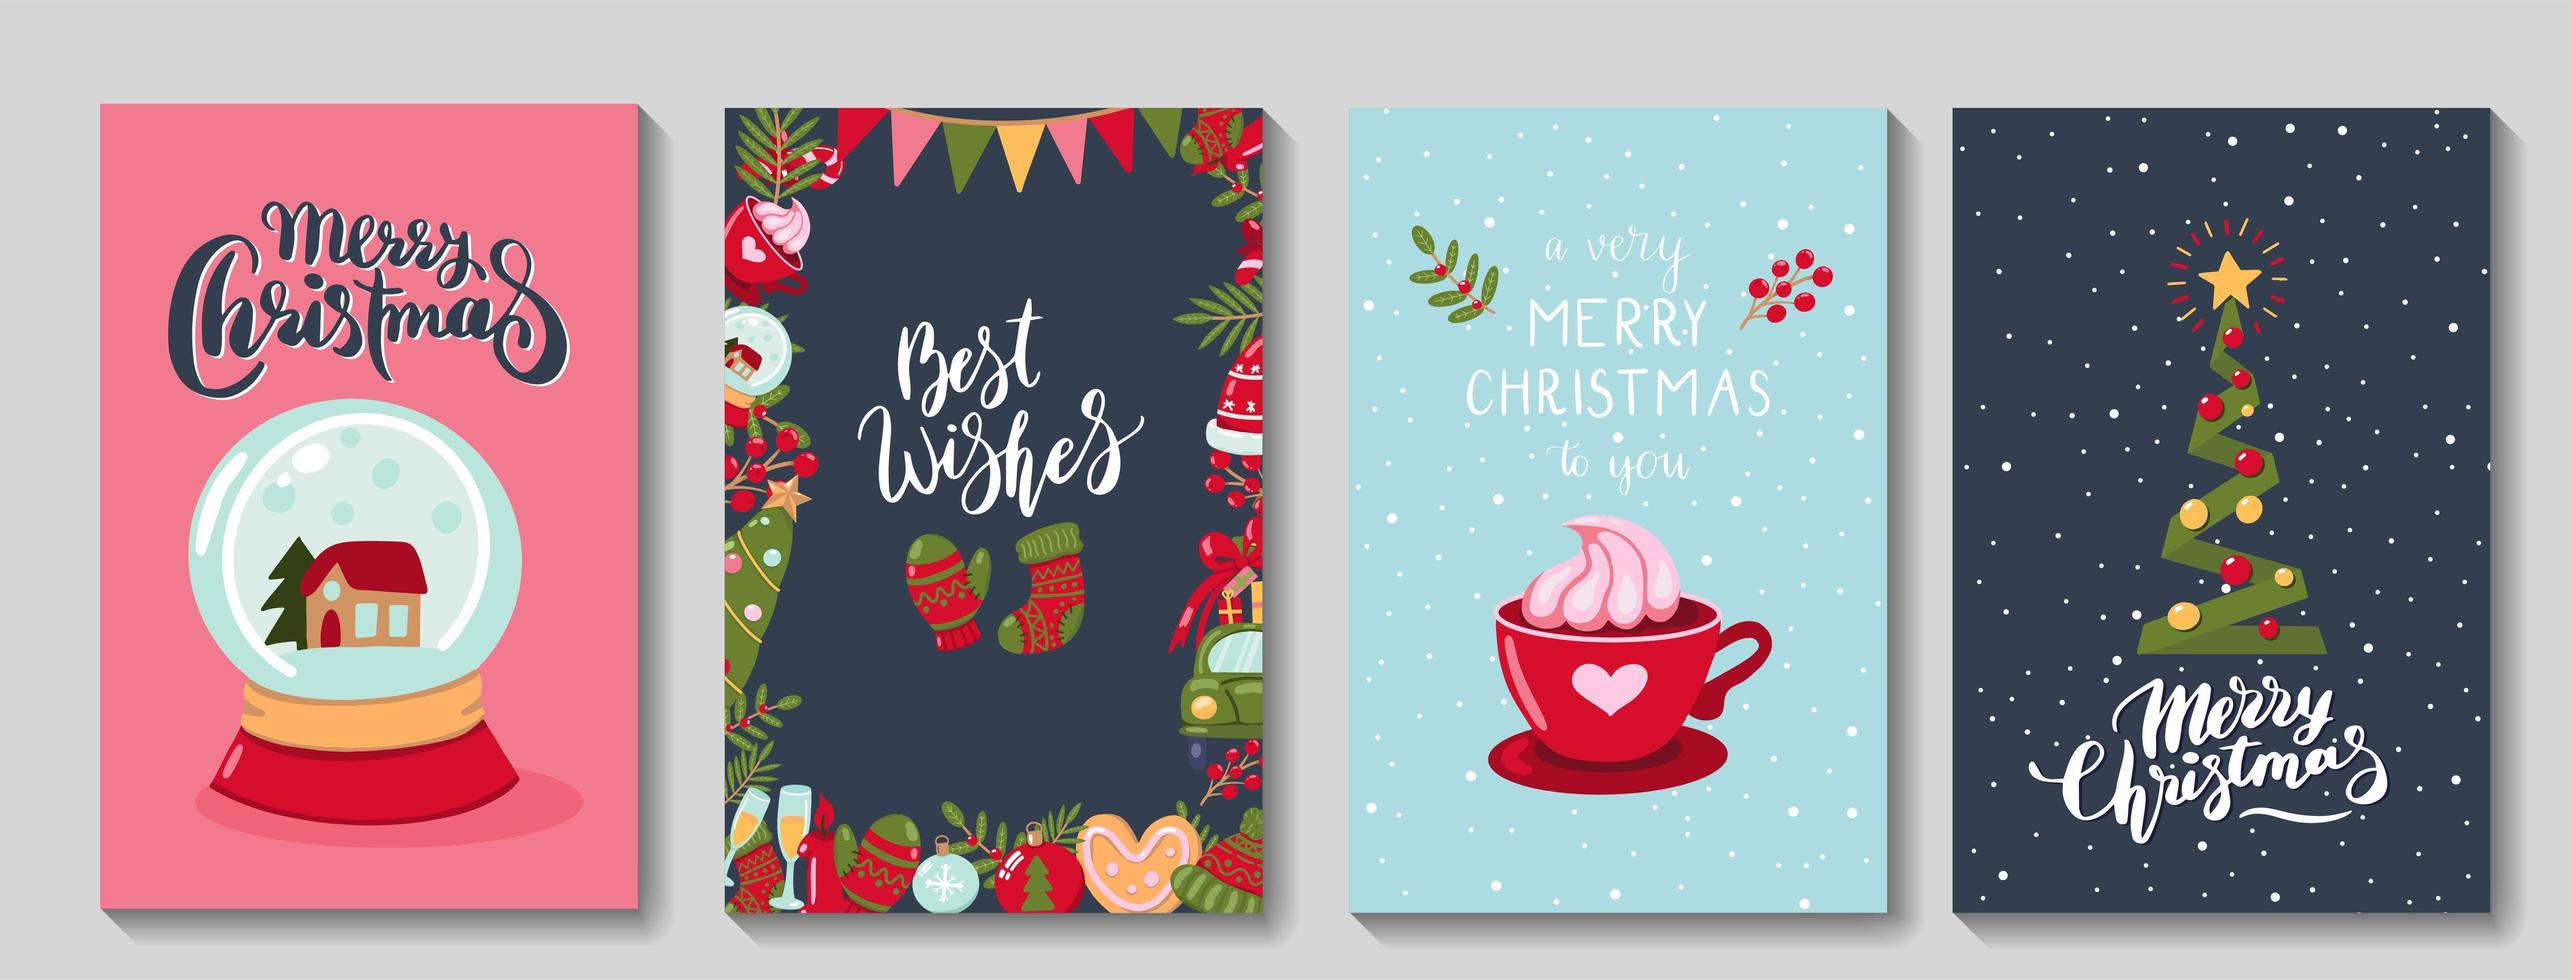 conjunto de tarjetas de felicitación de feliz navidad vector